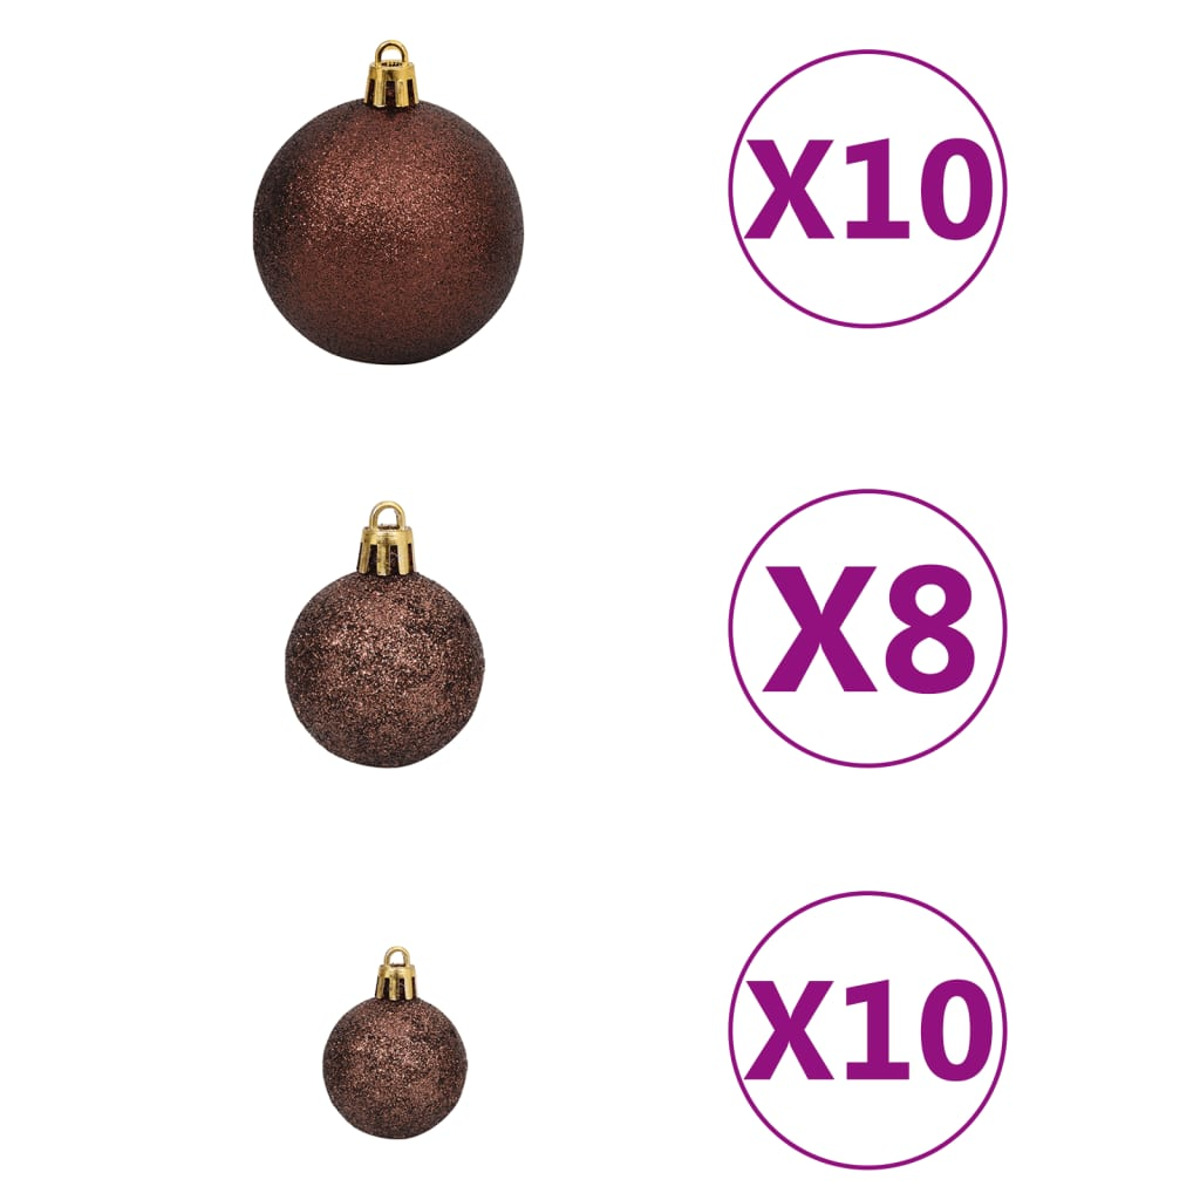 VIDAXL Weihnachtsbaum 3077501